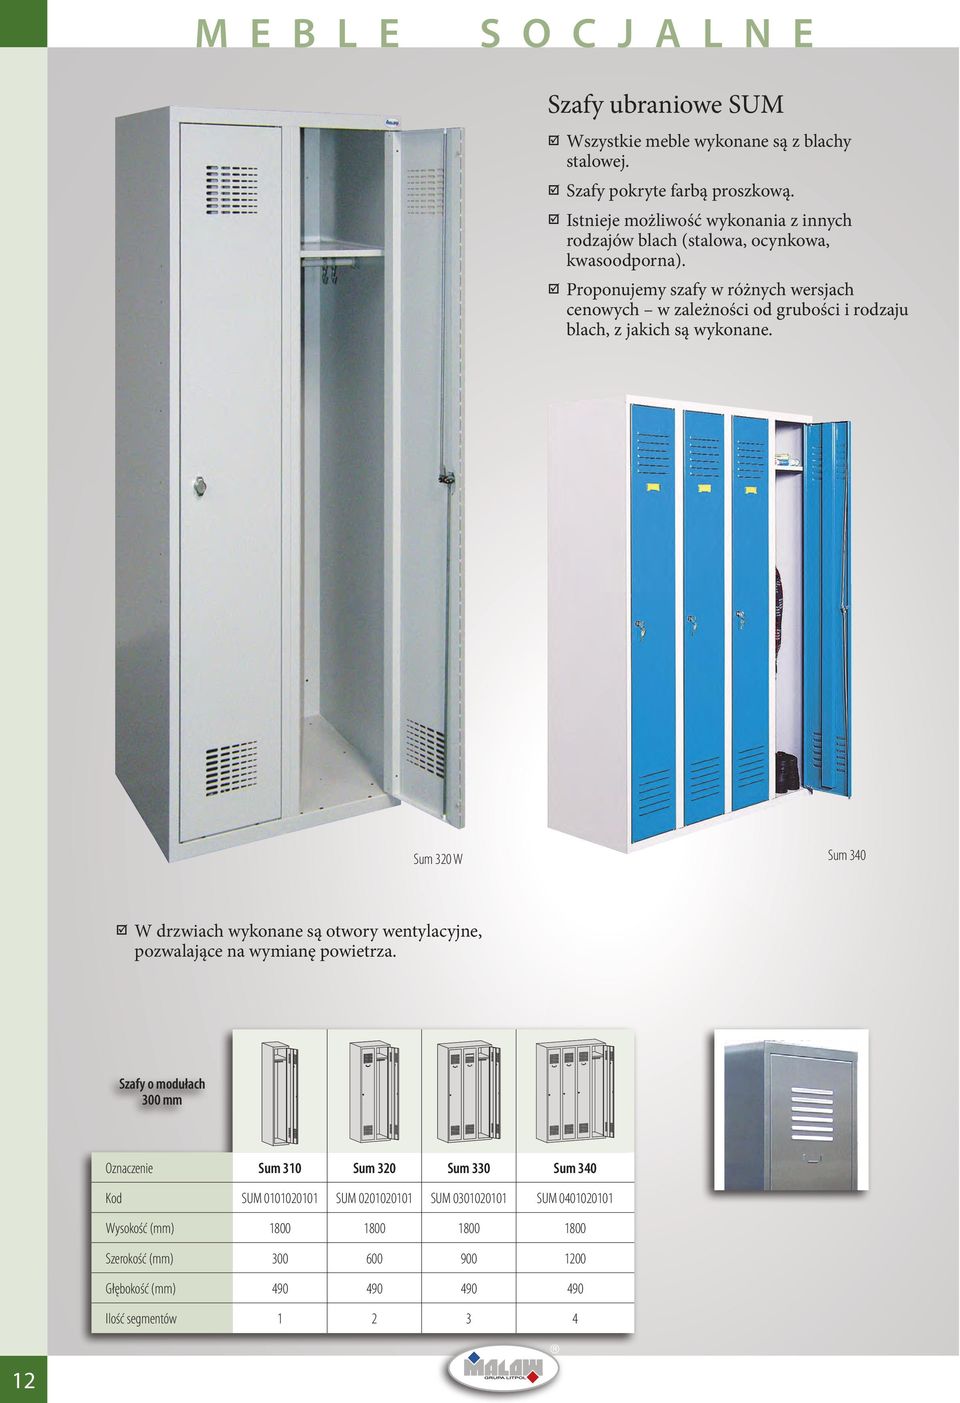 Proponujemy szafy w różnych wersjach cenowych w zależności od grubości i rodzaju blach, z jakich są wykonane.